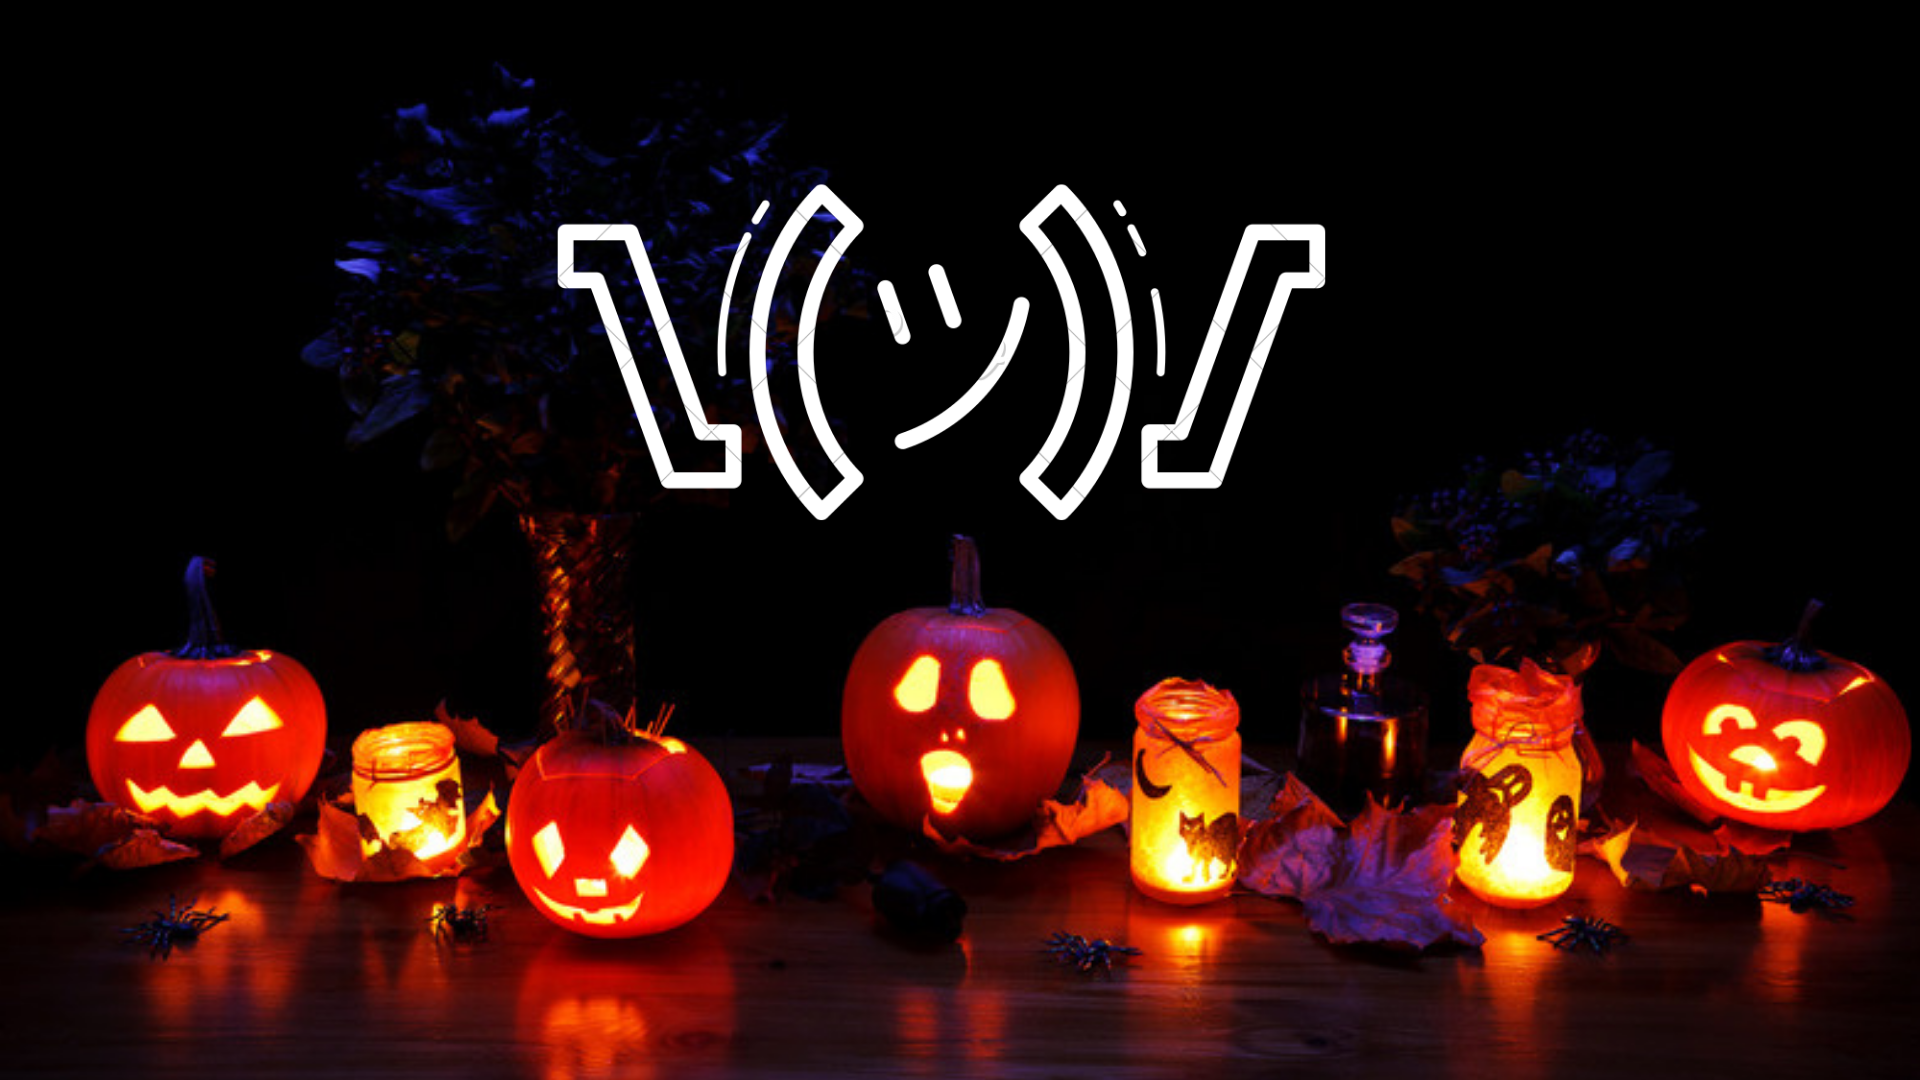 Pumpkins with an emoji.